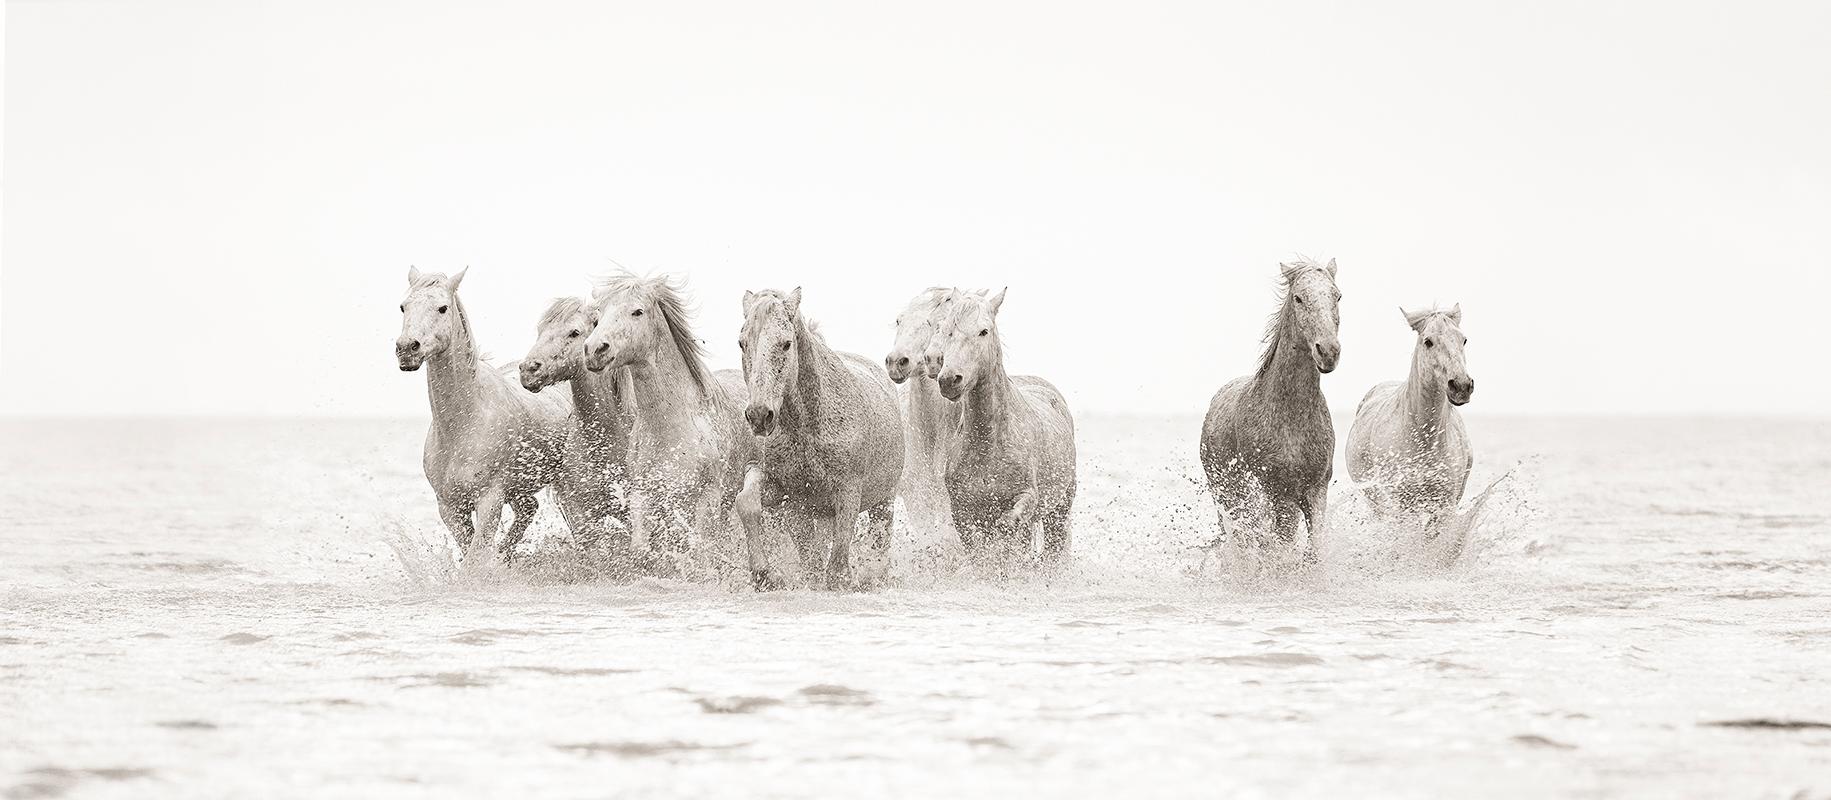 Tori Gagne Landscape Photograph - "Les Amis" Contemporary Wild Horse Photograph, 22.5" x 51.5"